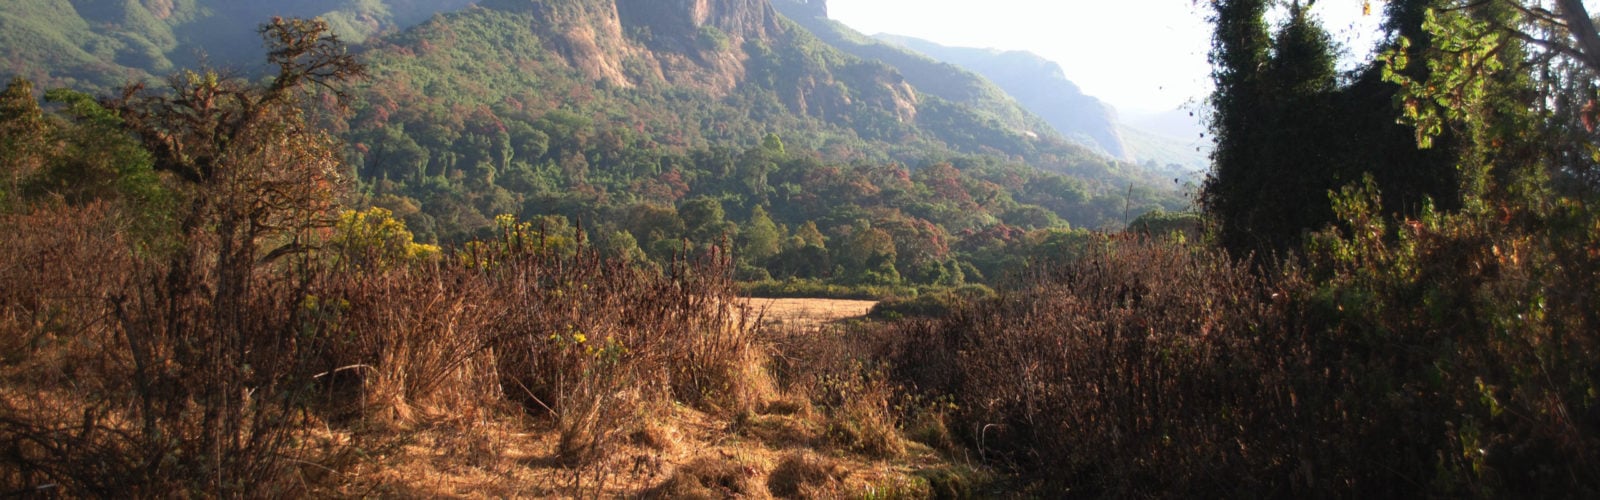 Gujuralle peaks ethiopia